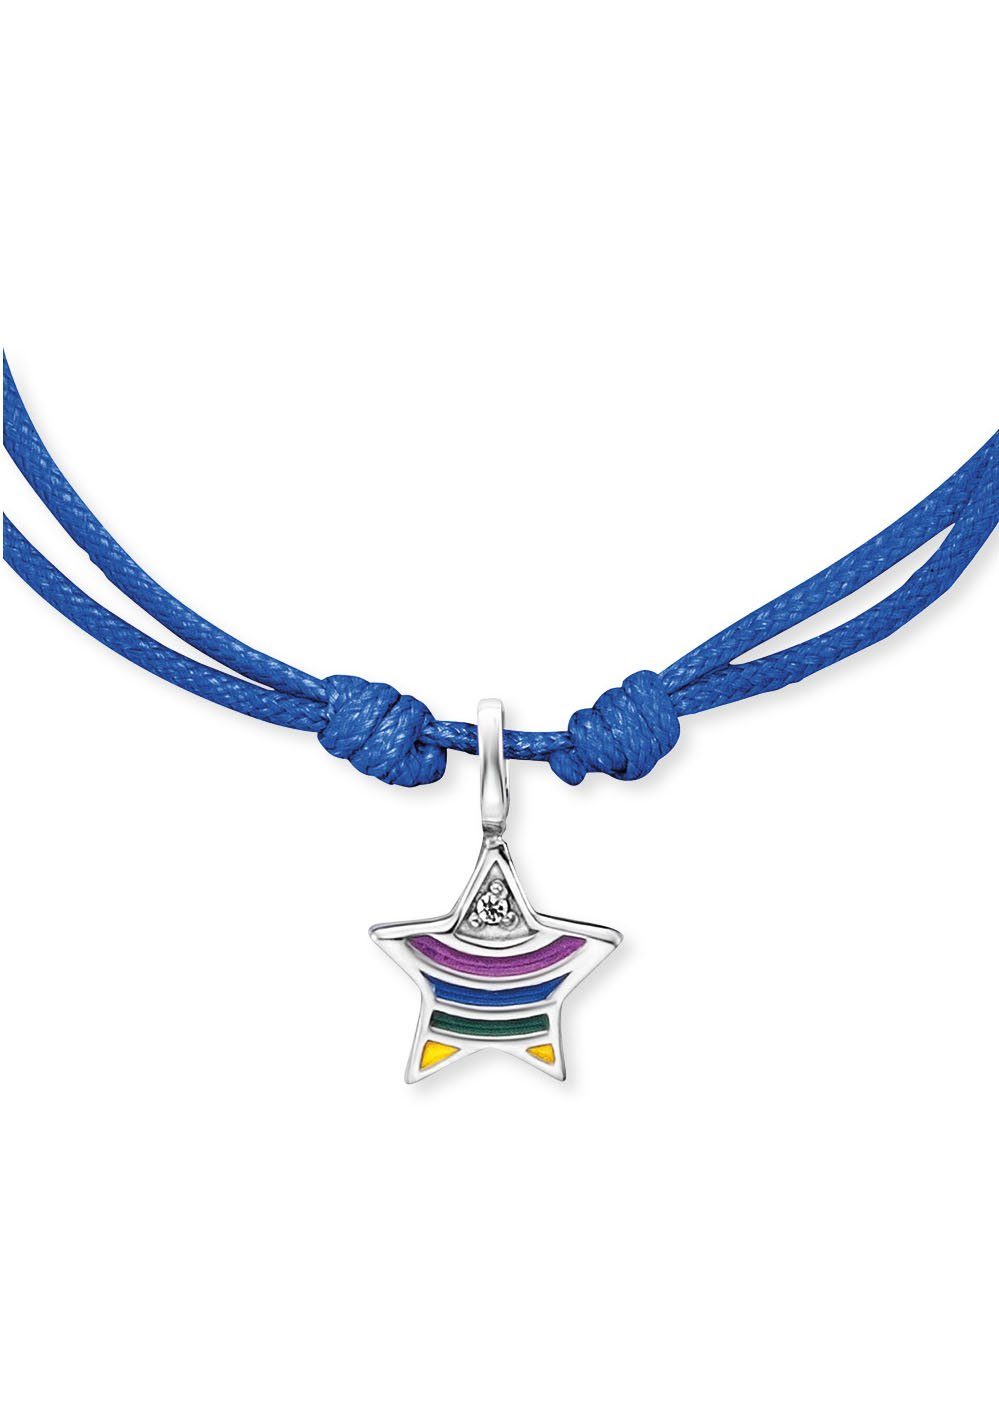 HEB-STAR-RAINBOW, Herzengel Armband Emaille Stern mit rainbow,